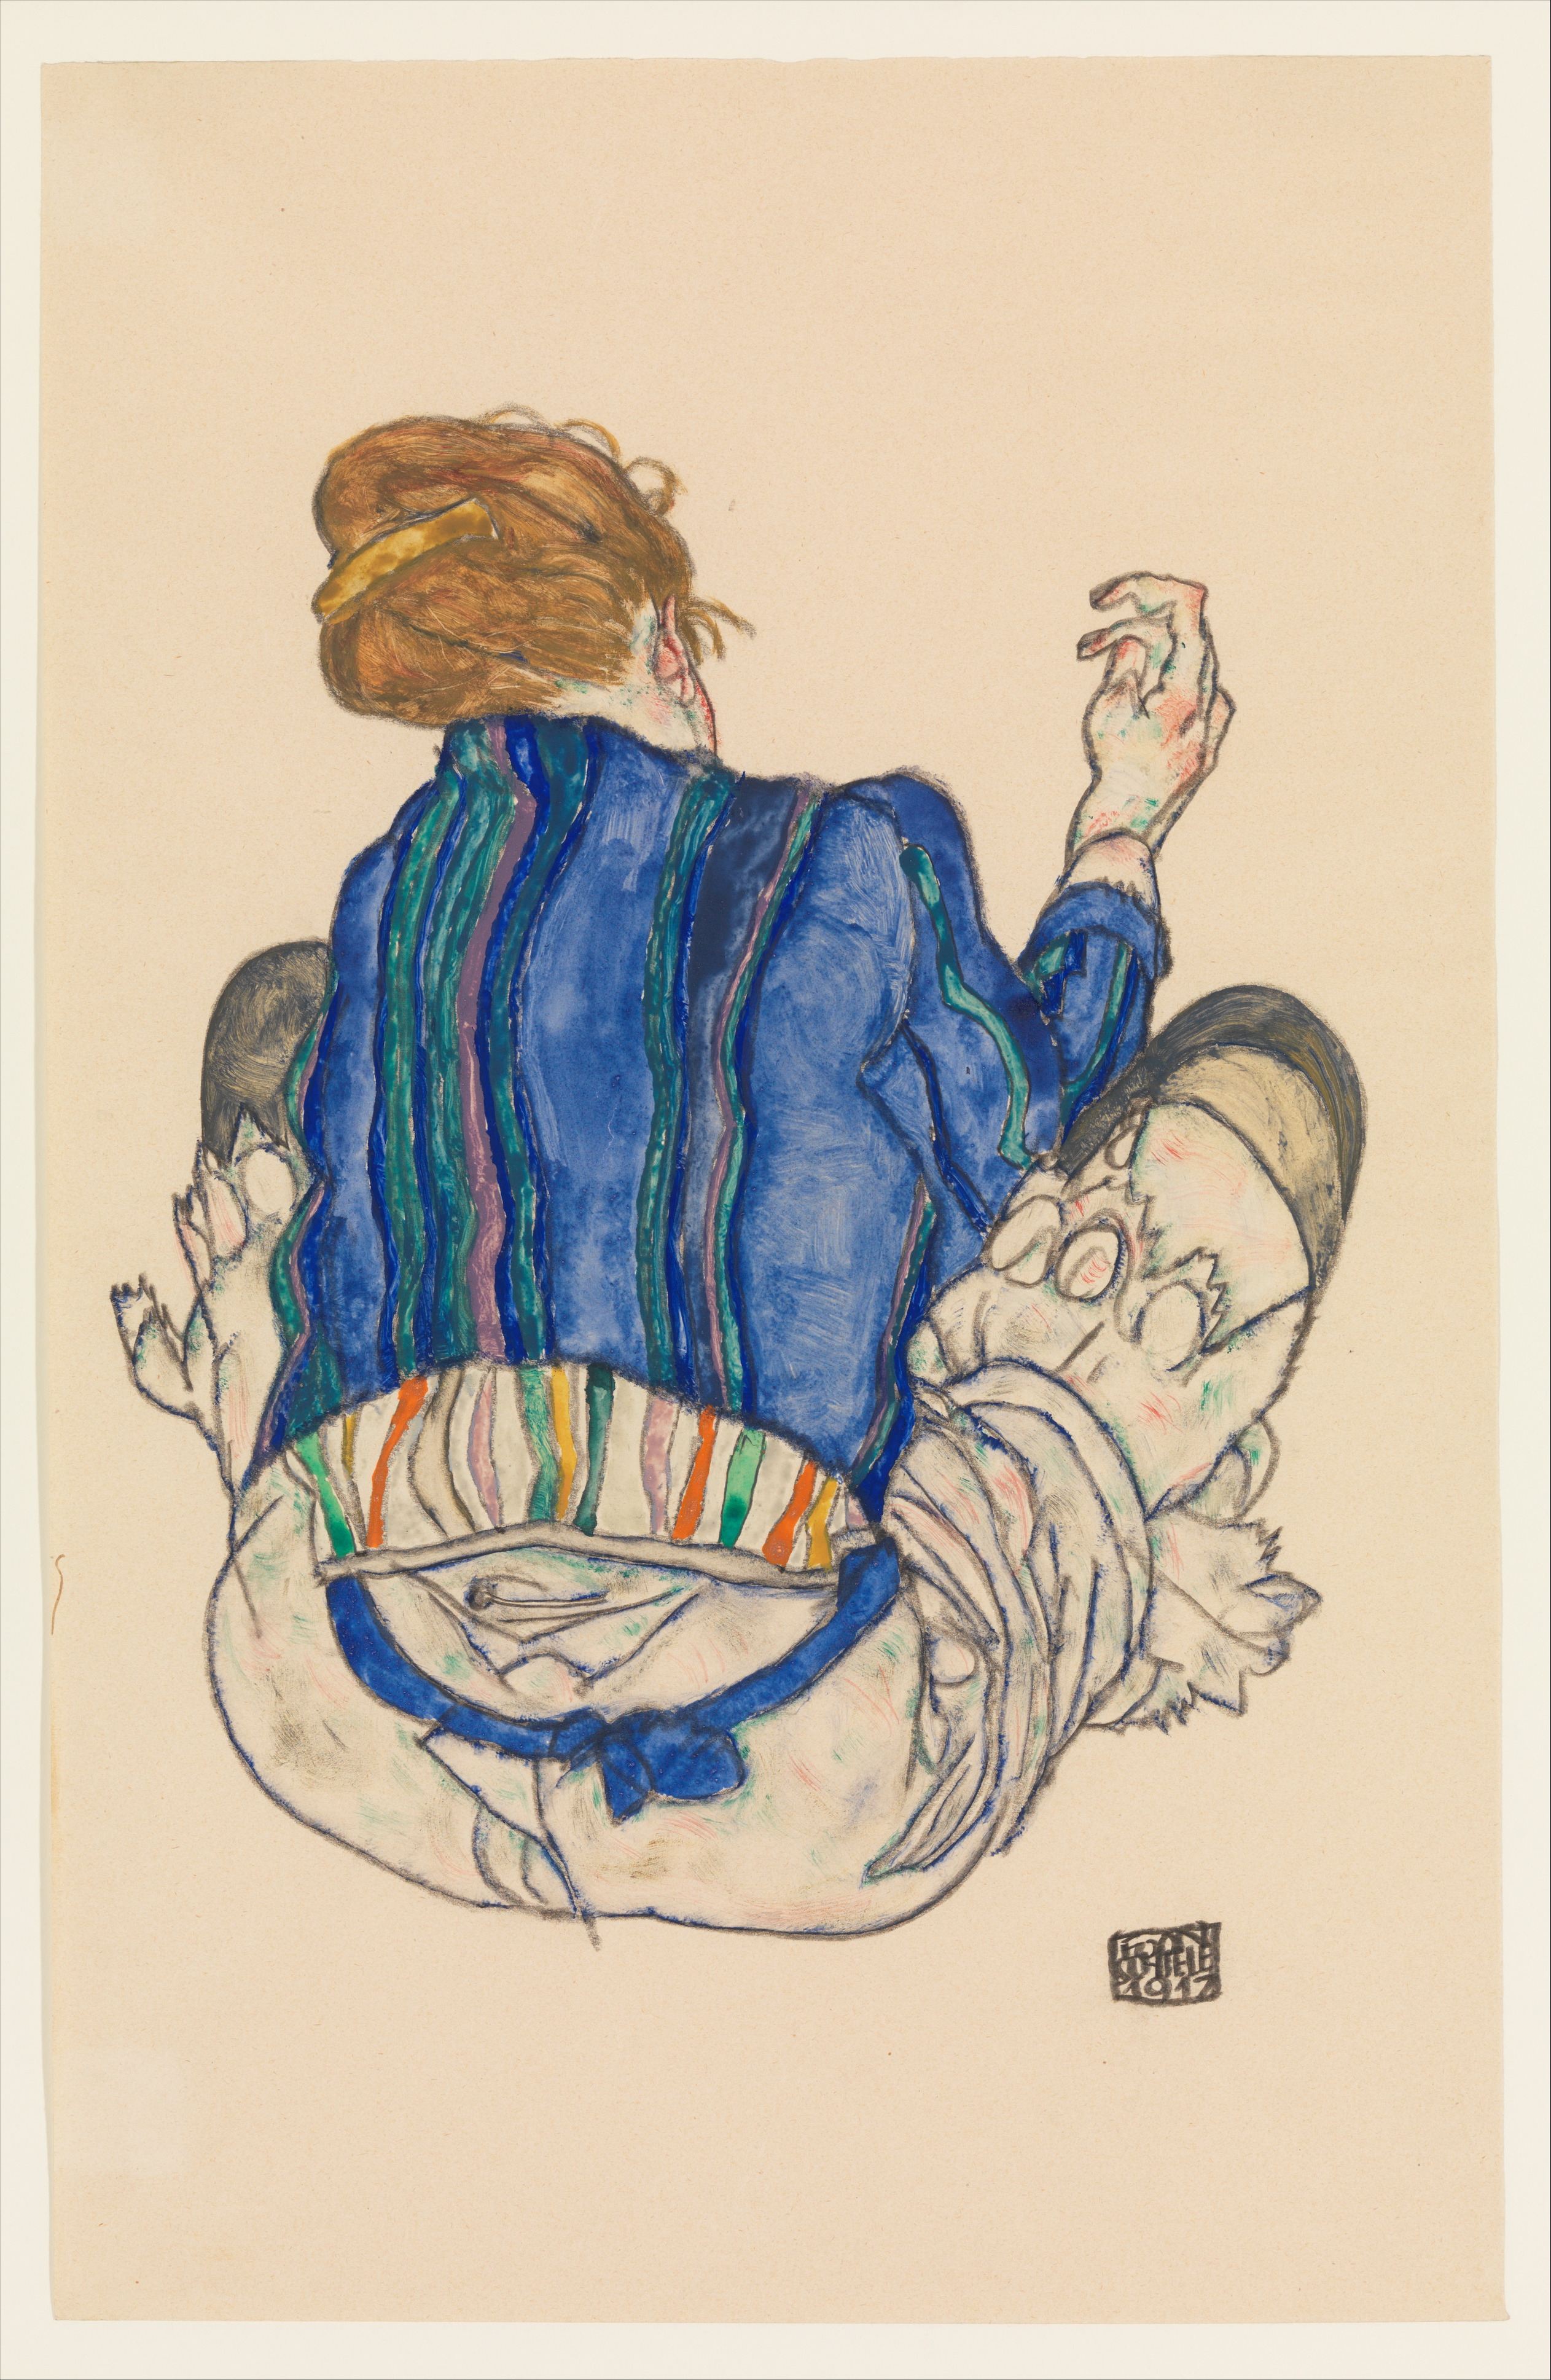 Ülő nő, hátulnézet by Egon Schiele - 1917 - 46.4 x 29.8 cm 